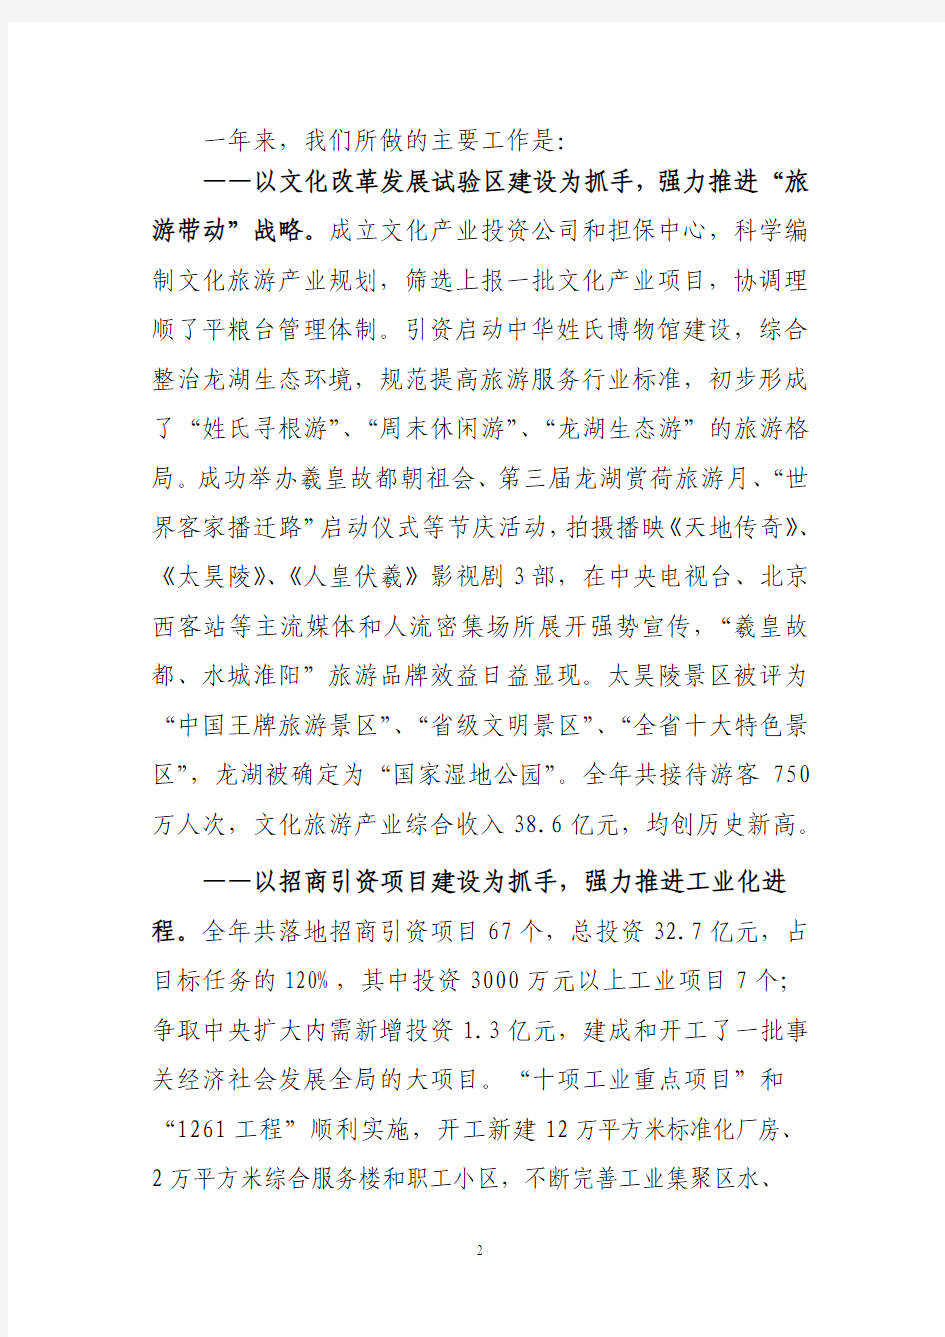 2010年县政府工作报告(定稿)